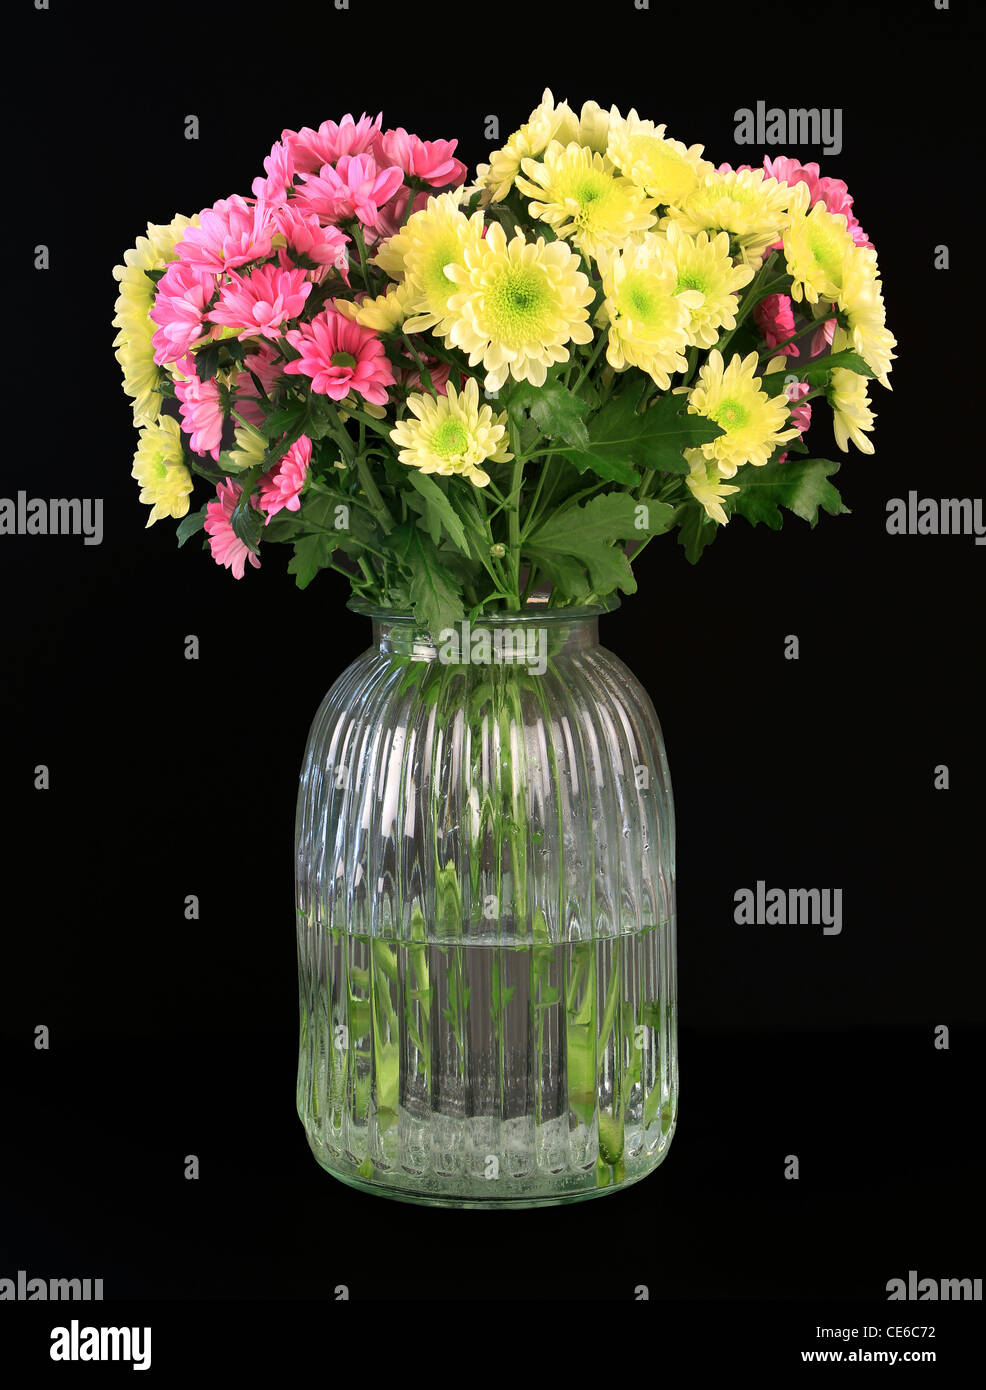 Vase of flowers on black background Stock Photo